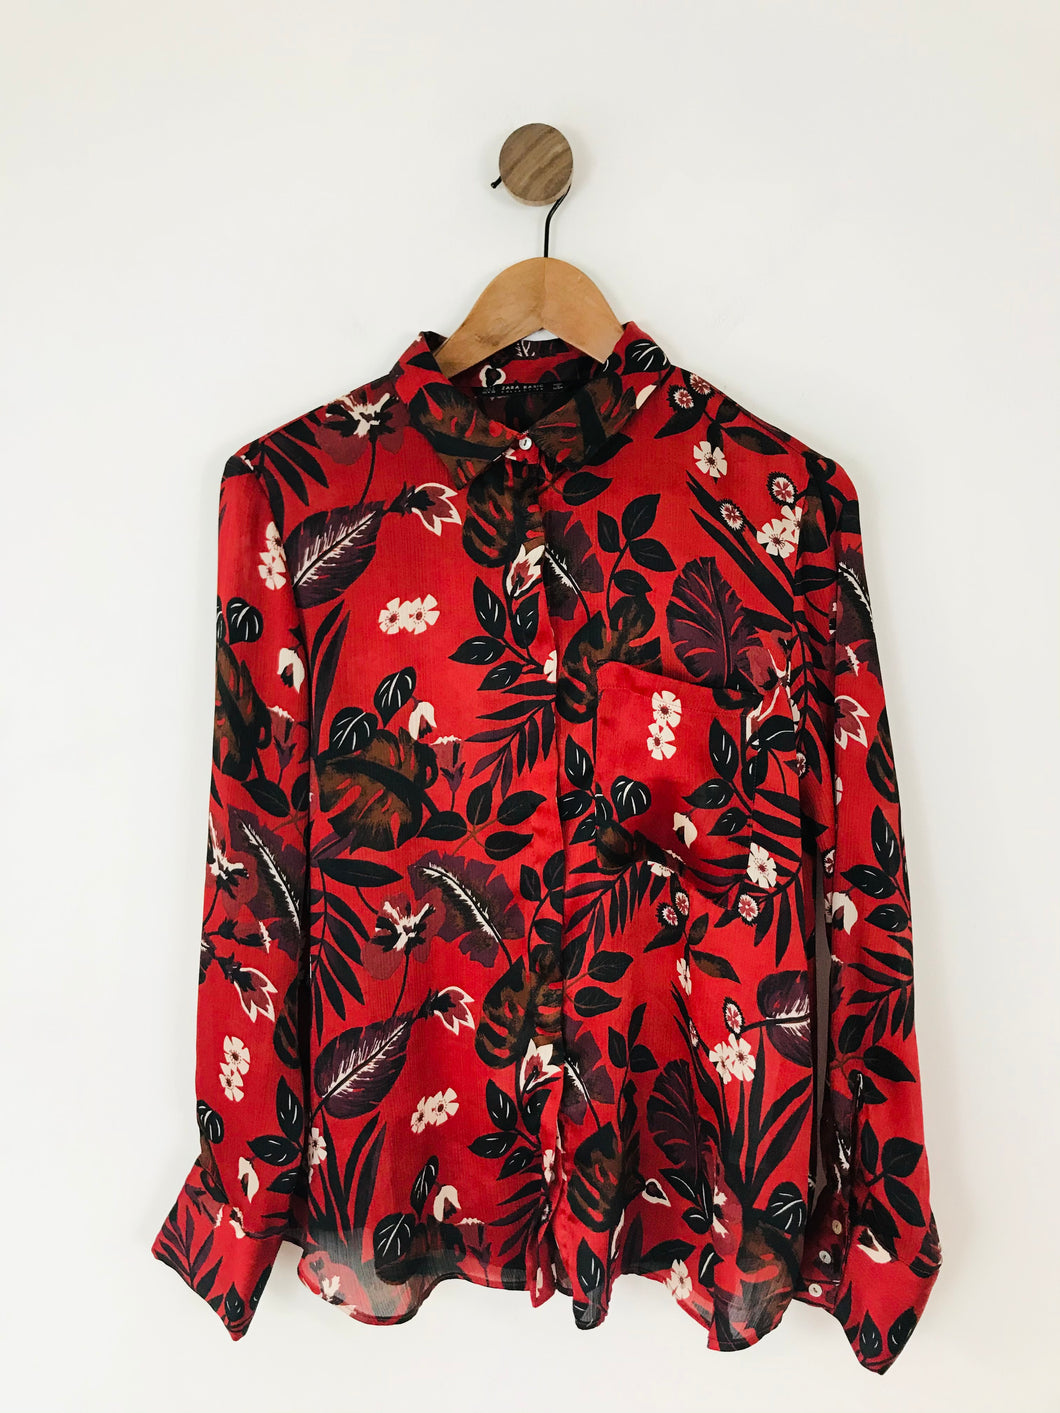 Zara Women’s Floral Long Sleeve Shirt | L UK14 | Red